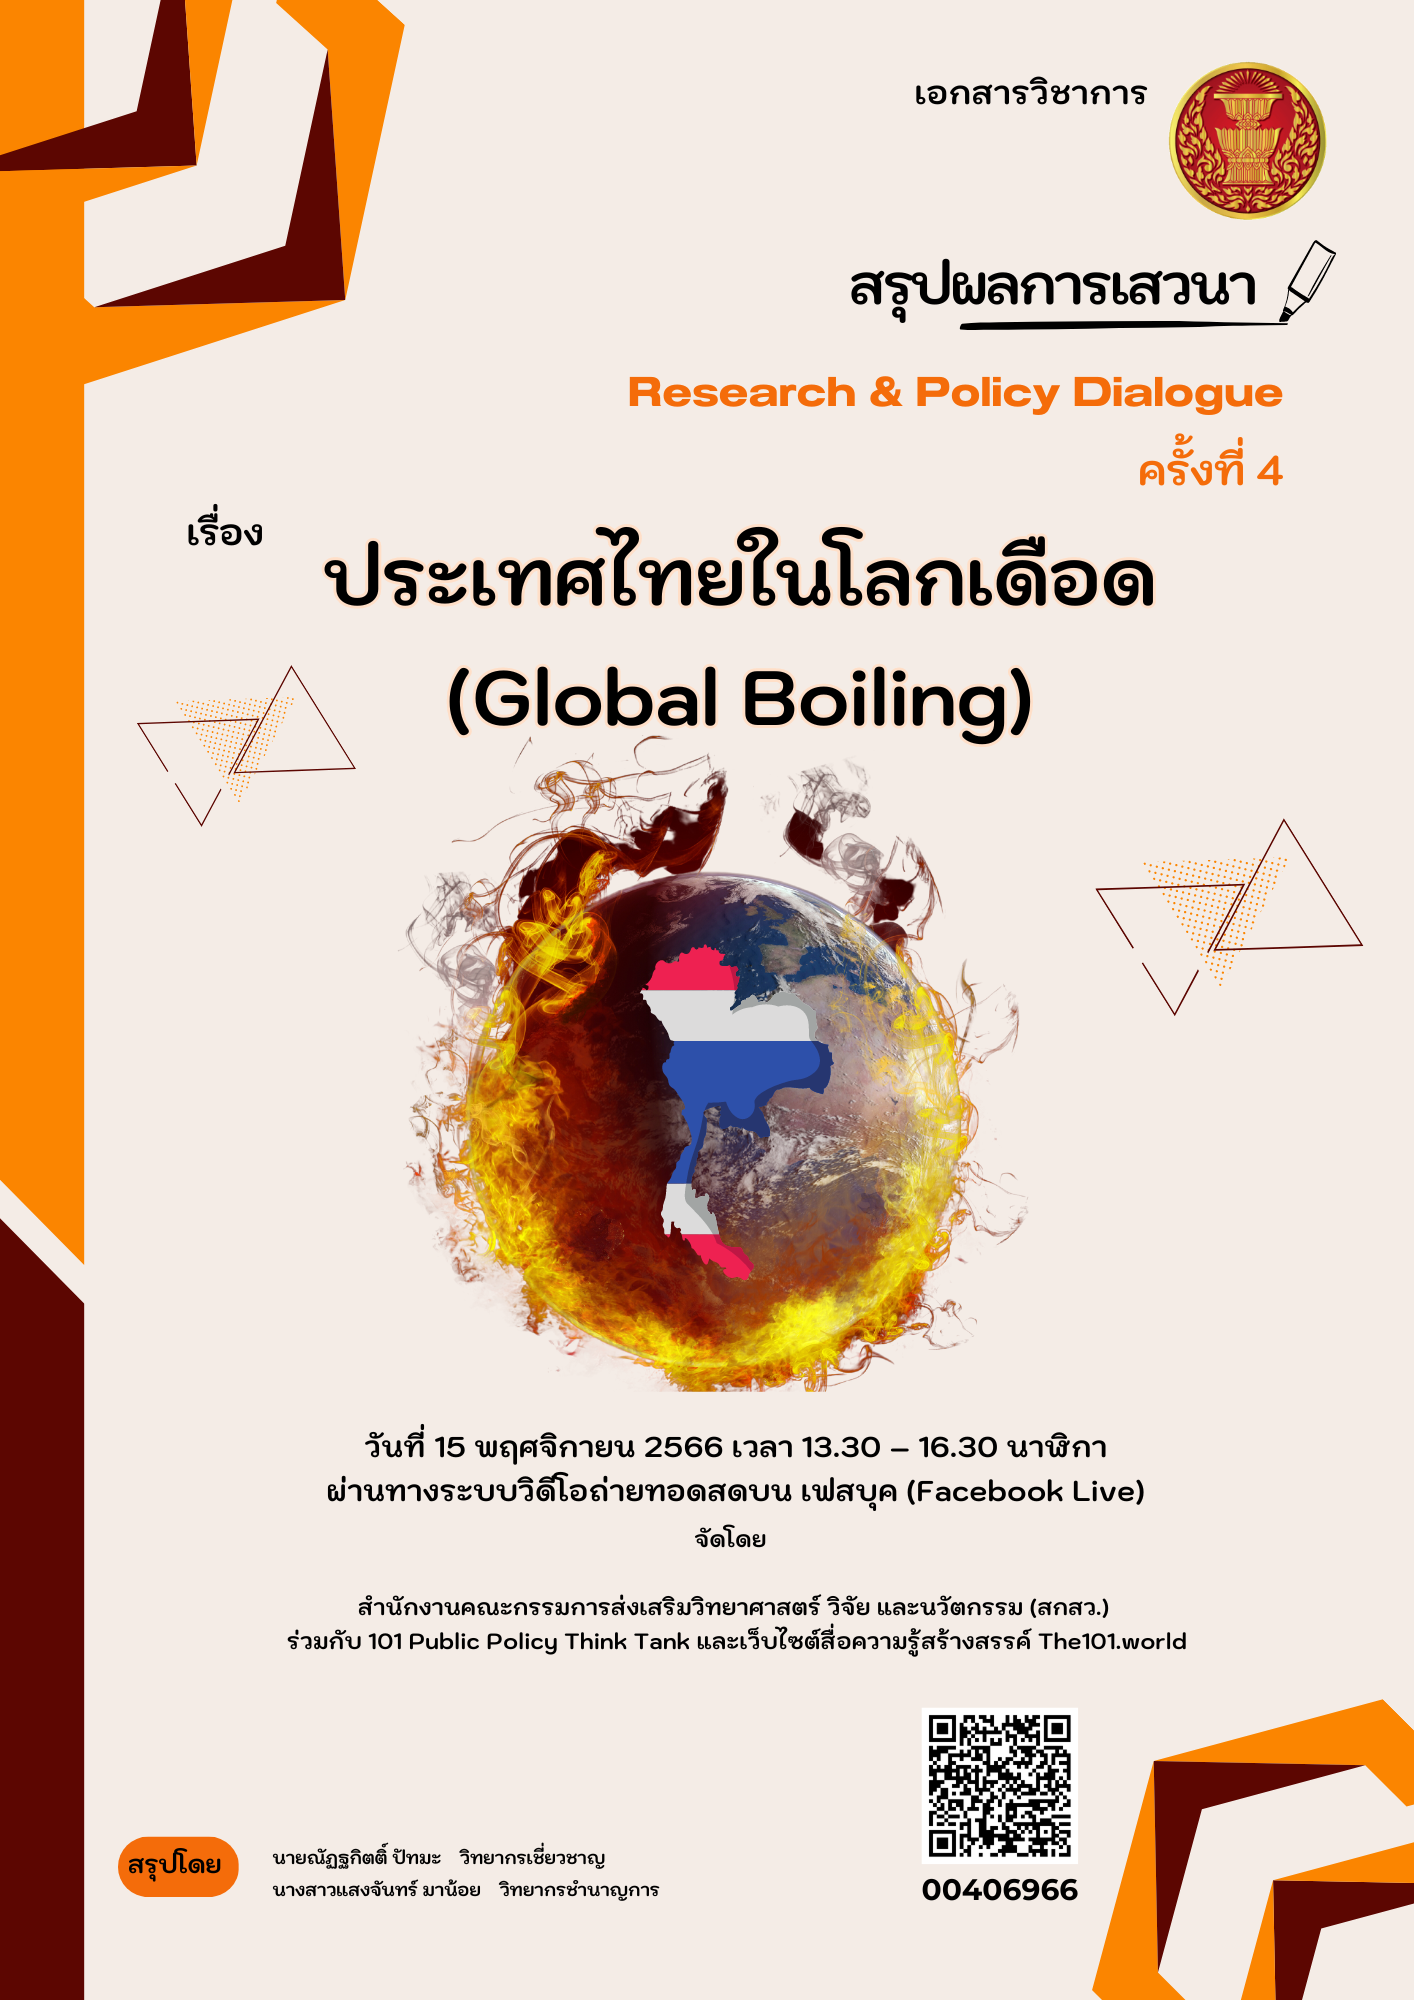 ประเทศไทยในโลกเดือด (Global Boiling)